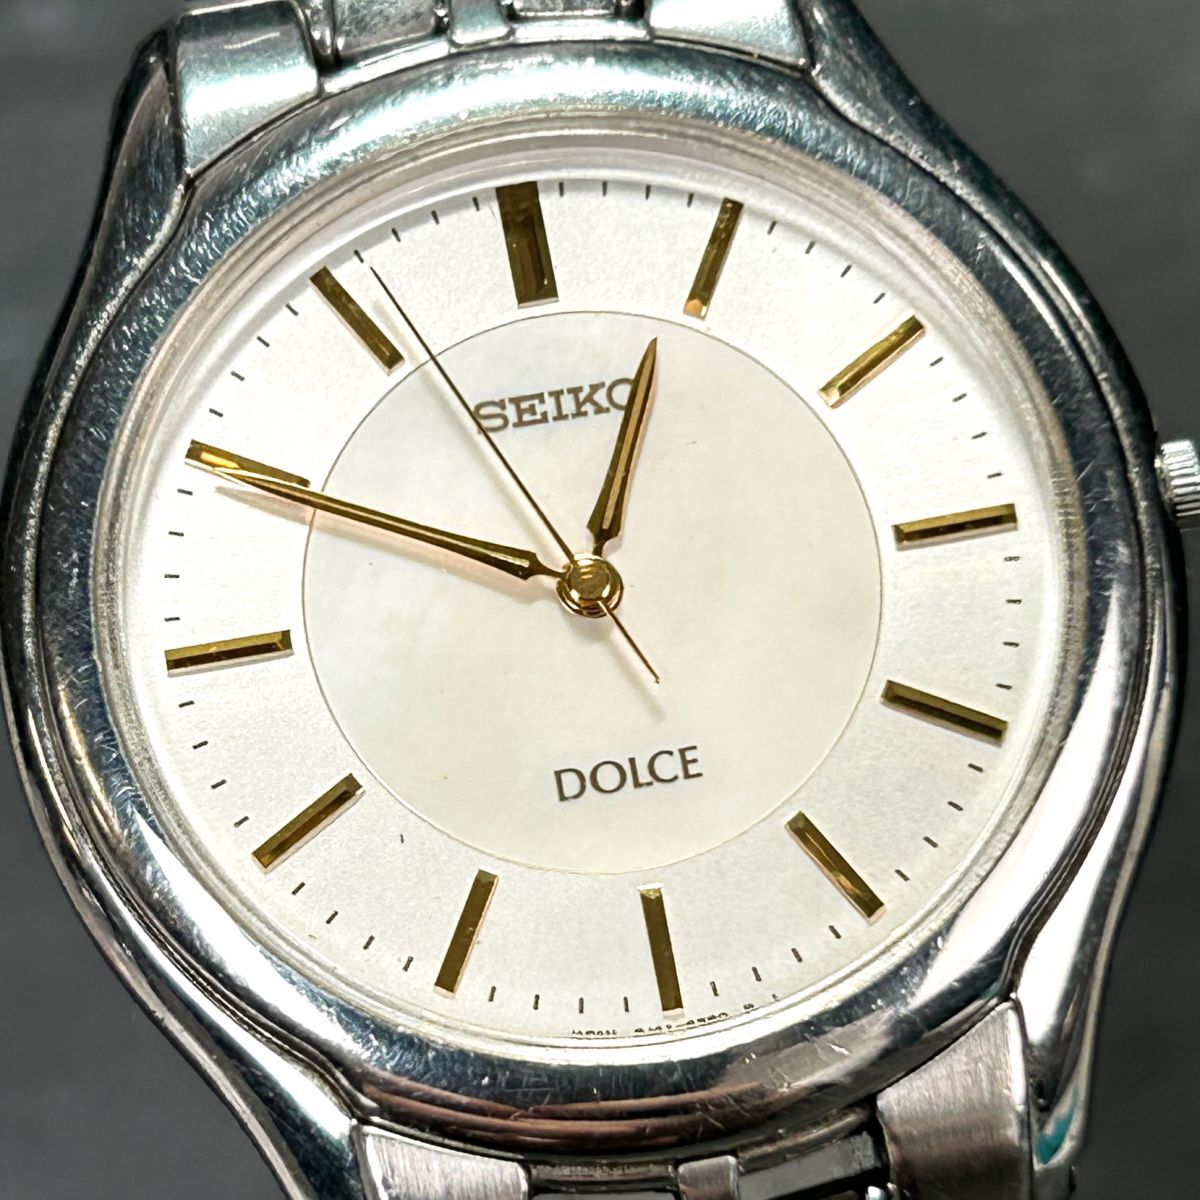 SEIKO セイコー DOLCE ドルチェ 8J41-6030 腕時計 クオーツ アナログ シルバー ゴールド ステンレススチール 新品電池交換済み 動作確認済の画像1